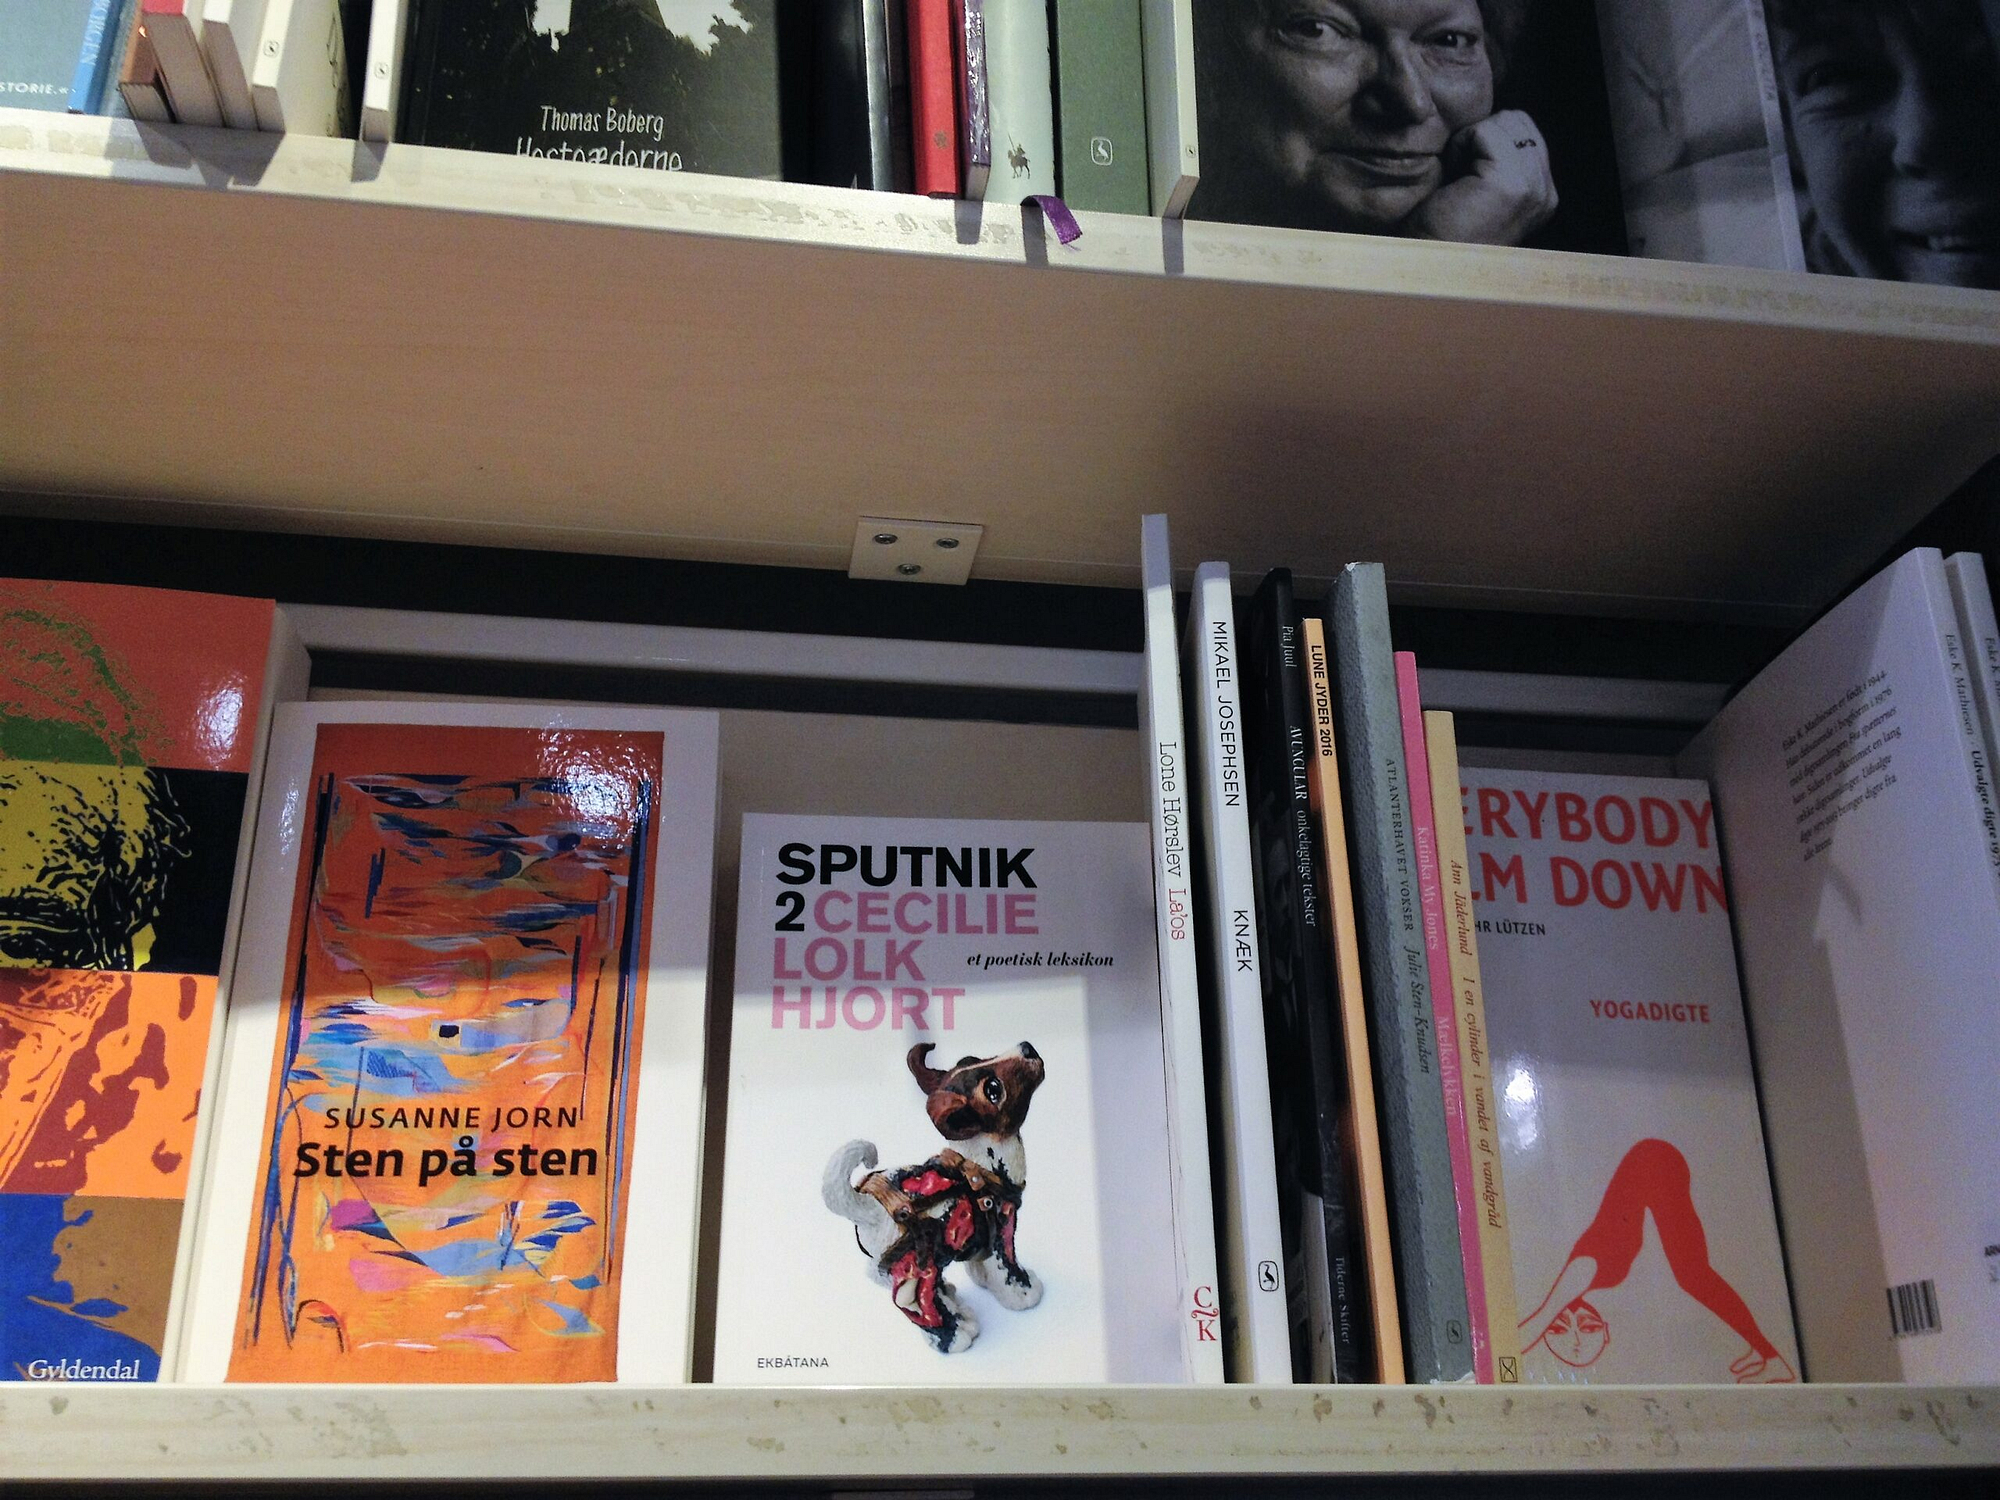 poetisk leksikon, arnold busck, Sputnik 2, Cecilie lolk hjort, boghandlere